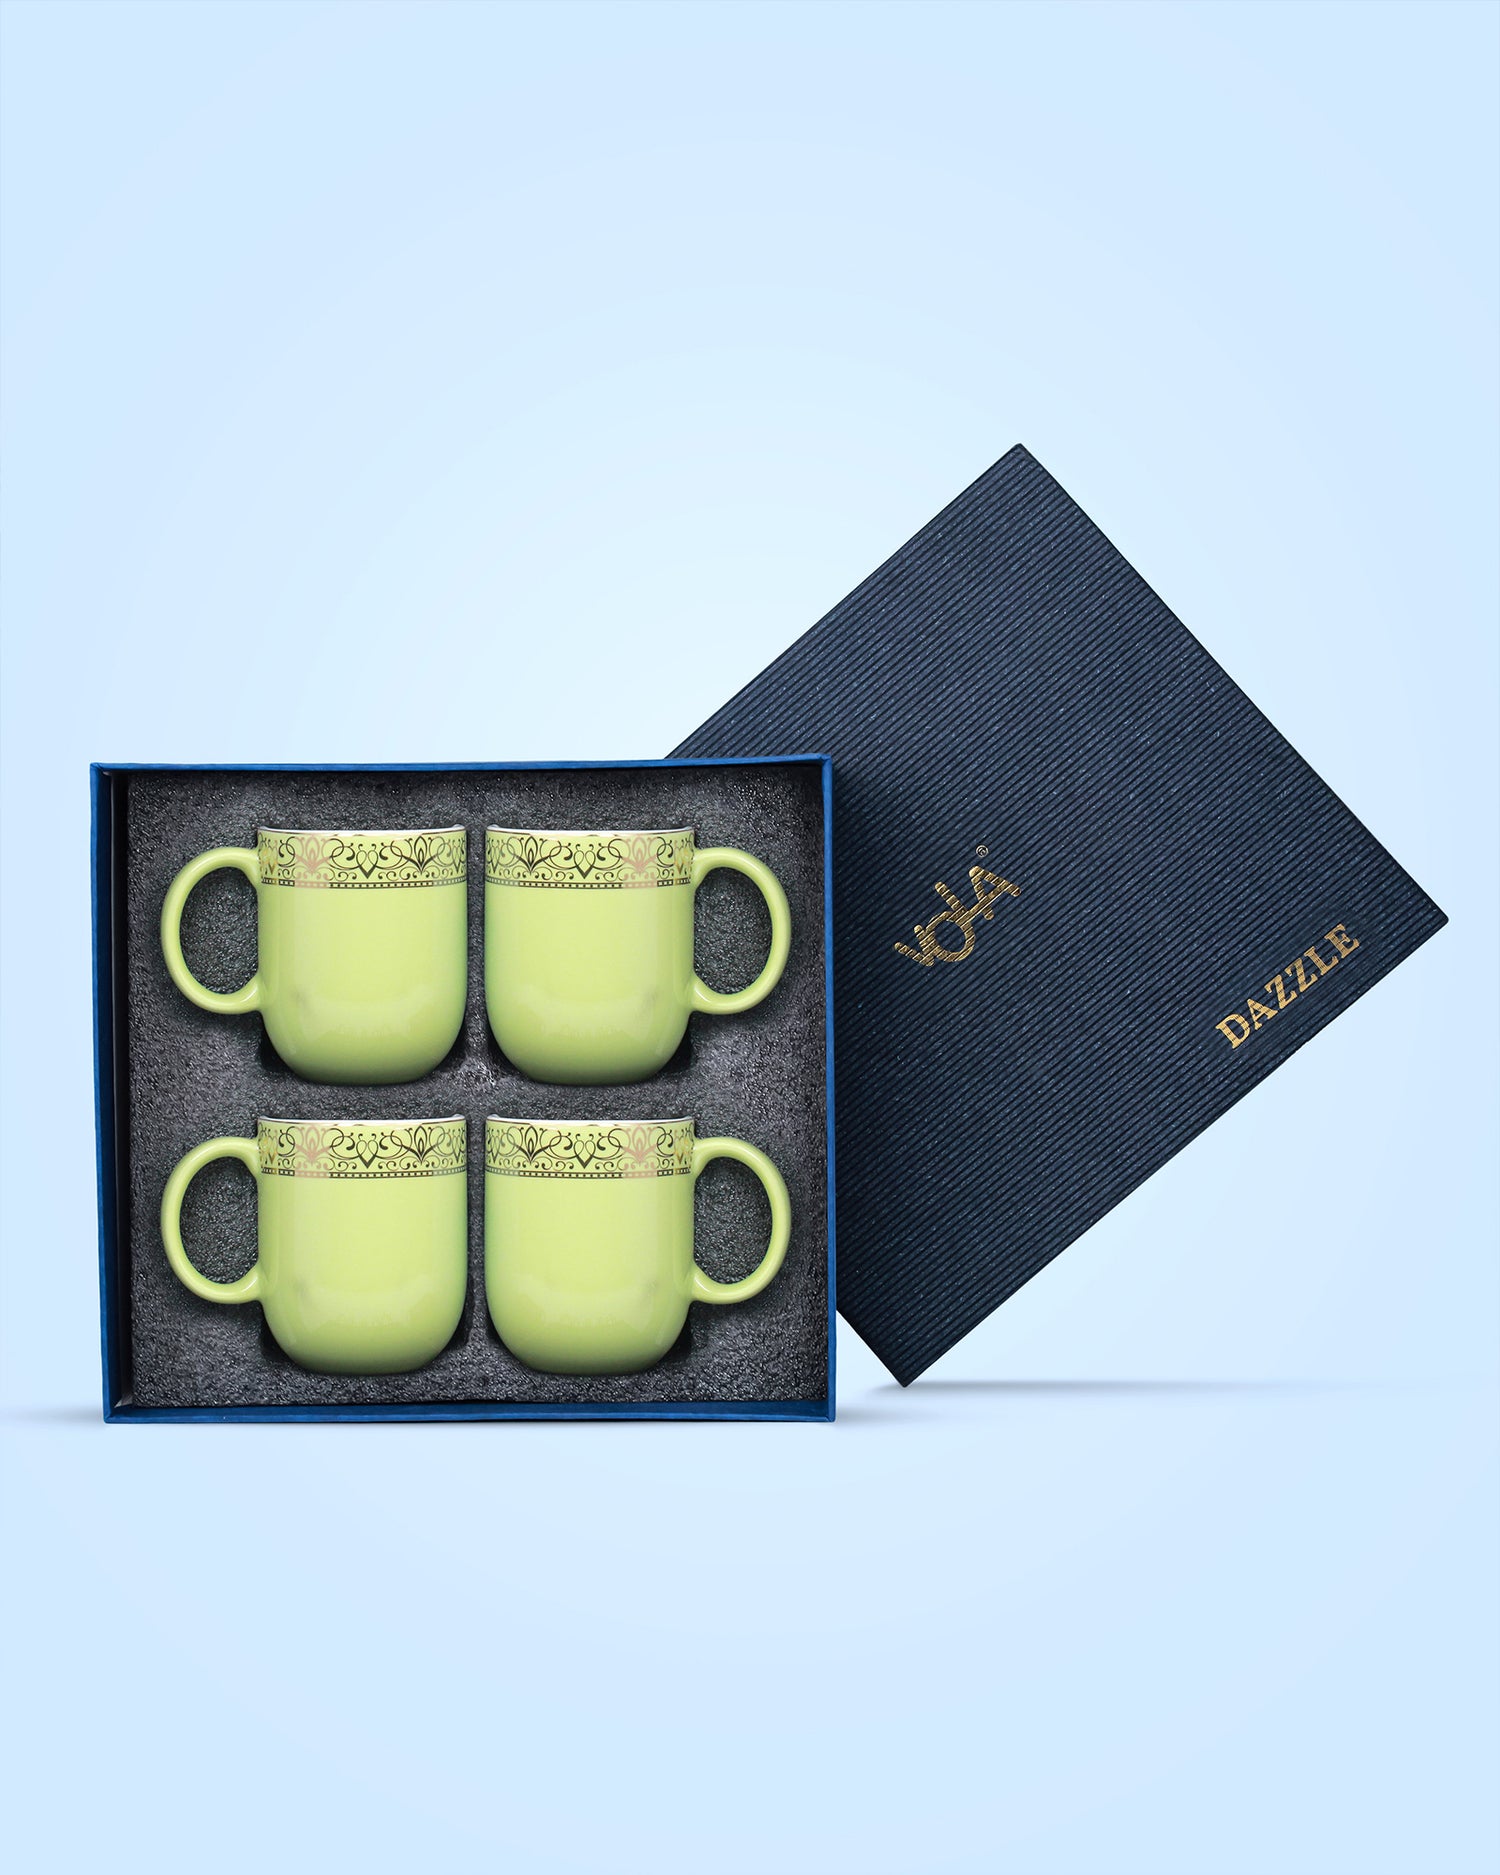 LILLY GREEN / Set of 4 * 300ml || Dazzle Heritage Superior Mug | Stylish Colors